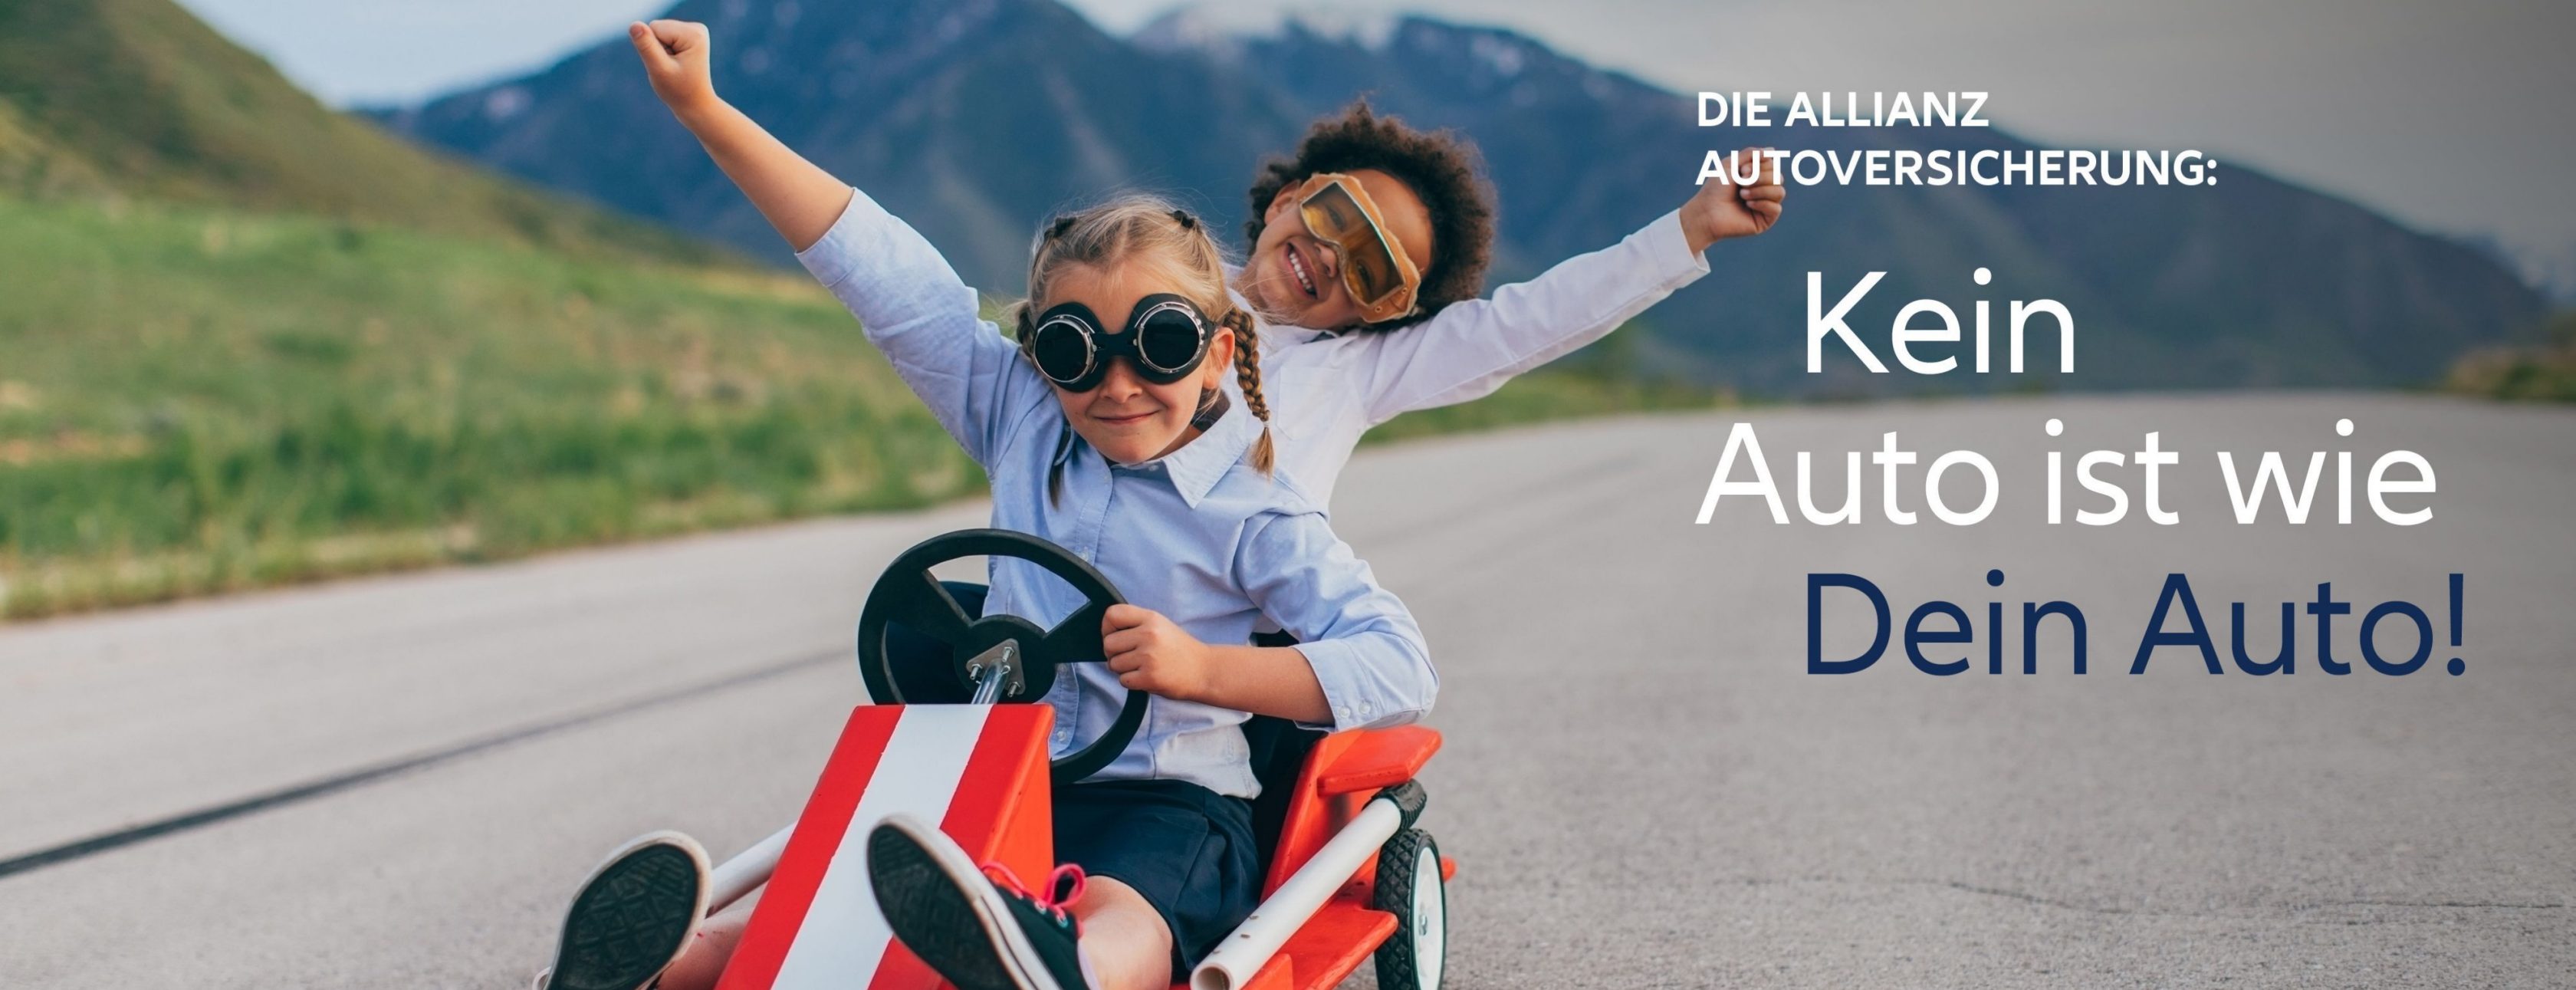 Allianz Versicherung Bilal Kilic Bremen - KFZ Auto Versicherung Beitragsanpassung Vollkasko